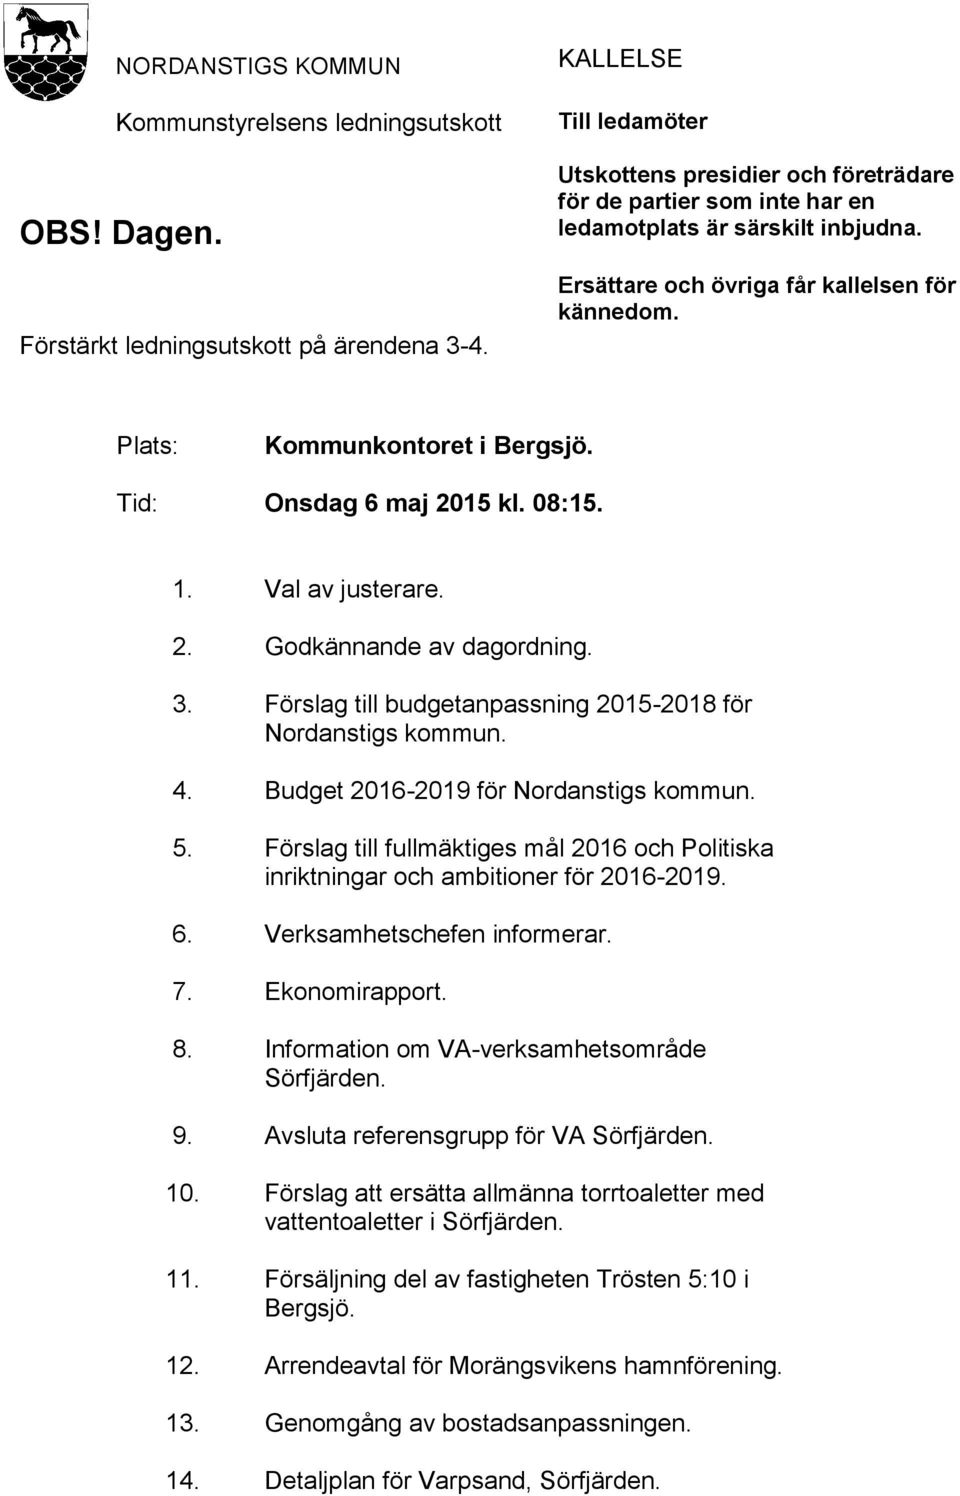 Plats: Kommunkontoret i Bergsjö. Tid: Onsdag 6 maj 2015 kl. 08:15. 1. Val av justerare. 2. Godkännande av dagordning. 3. Förslag till budgetanpassning 2015-2018 för Nordanstigs kommun. 4.